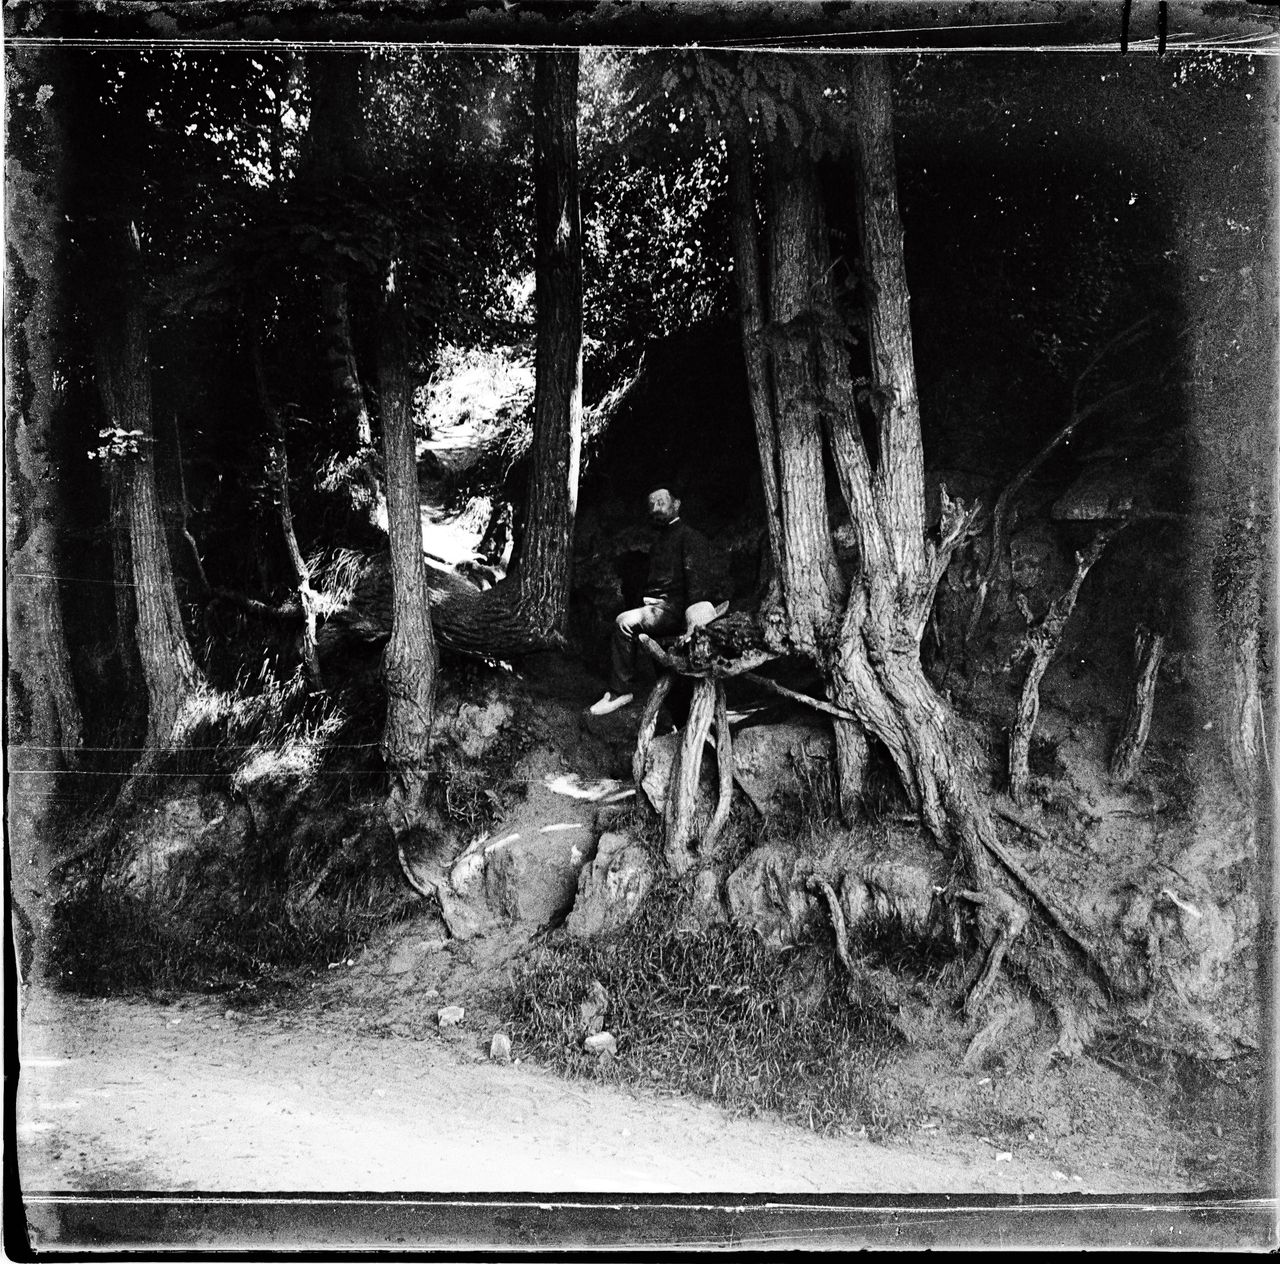 De herontdekte foto van de boomstronken in Auvers-sur-Oise die Van Gogh heeft vereeuwigd op zijn laatste schilderij.